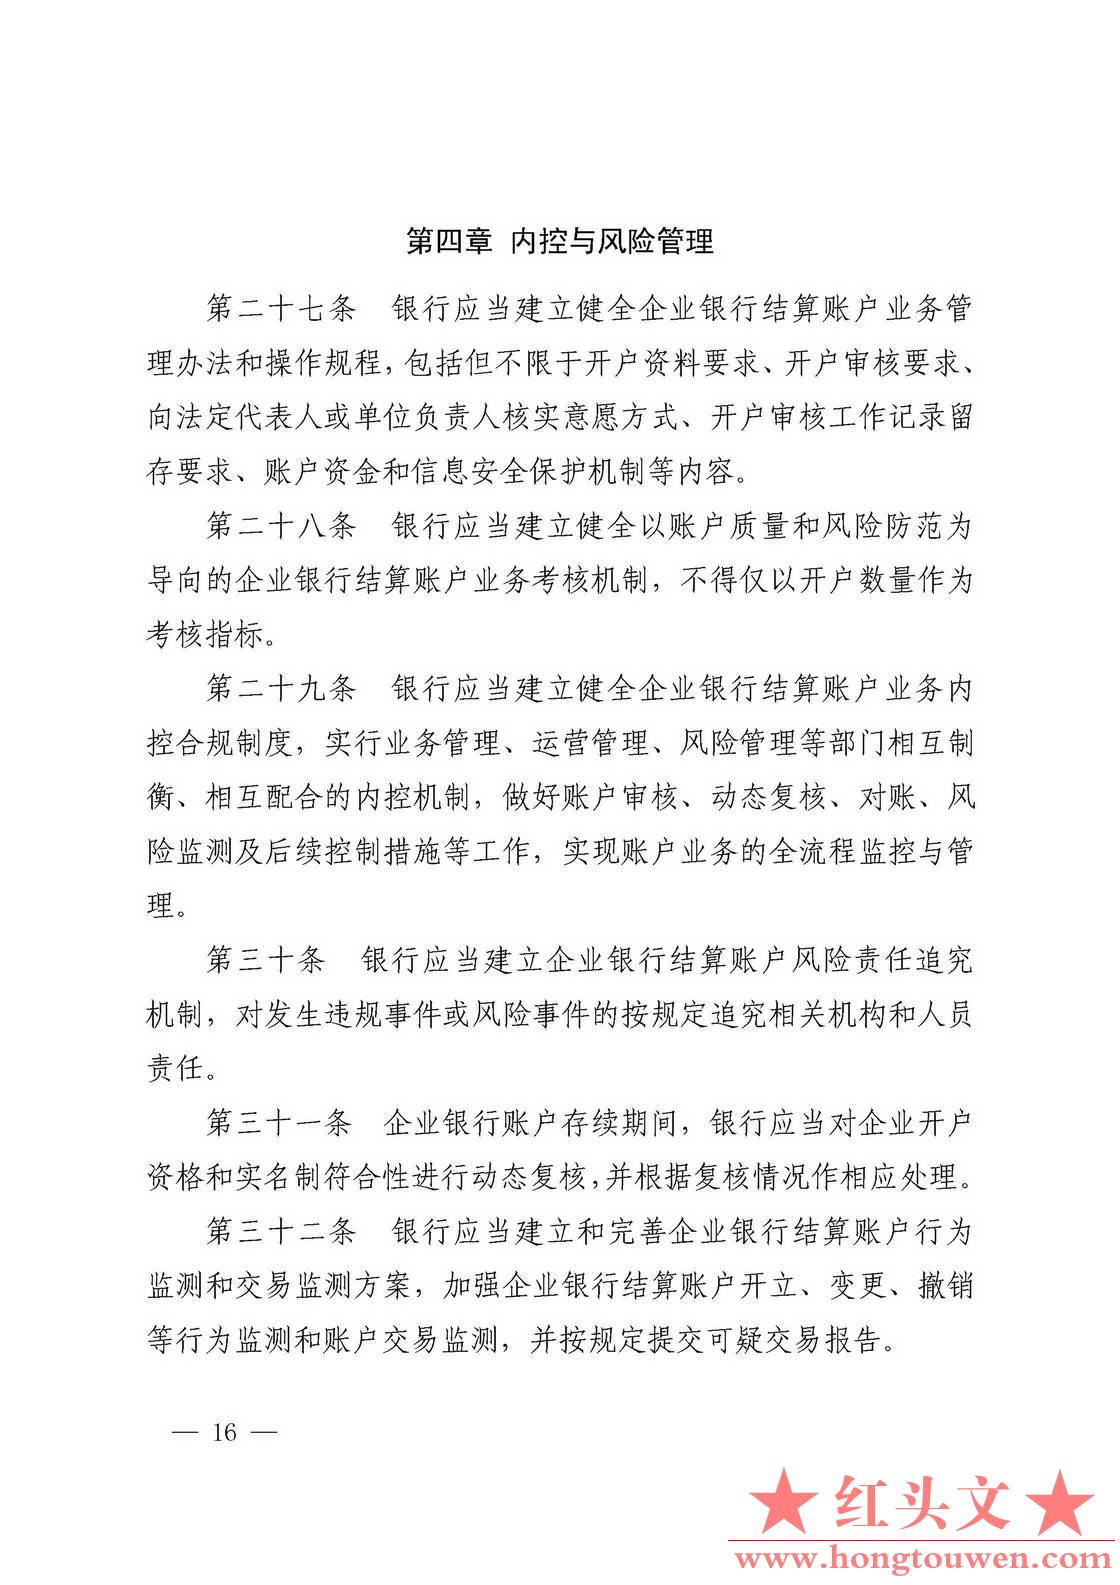 银发[2019]41号-中国人民银行关于取消企业银行账户许可的通知_页面_16.jpg.jpg